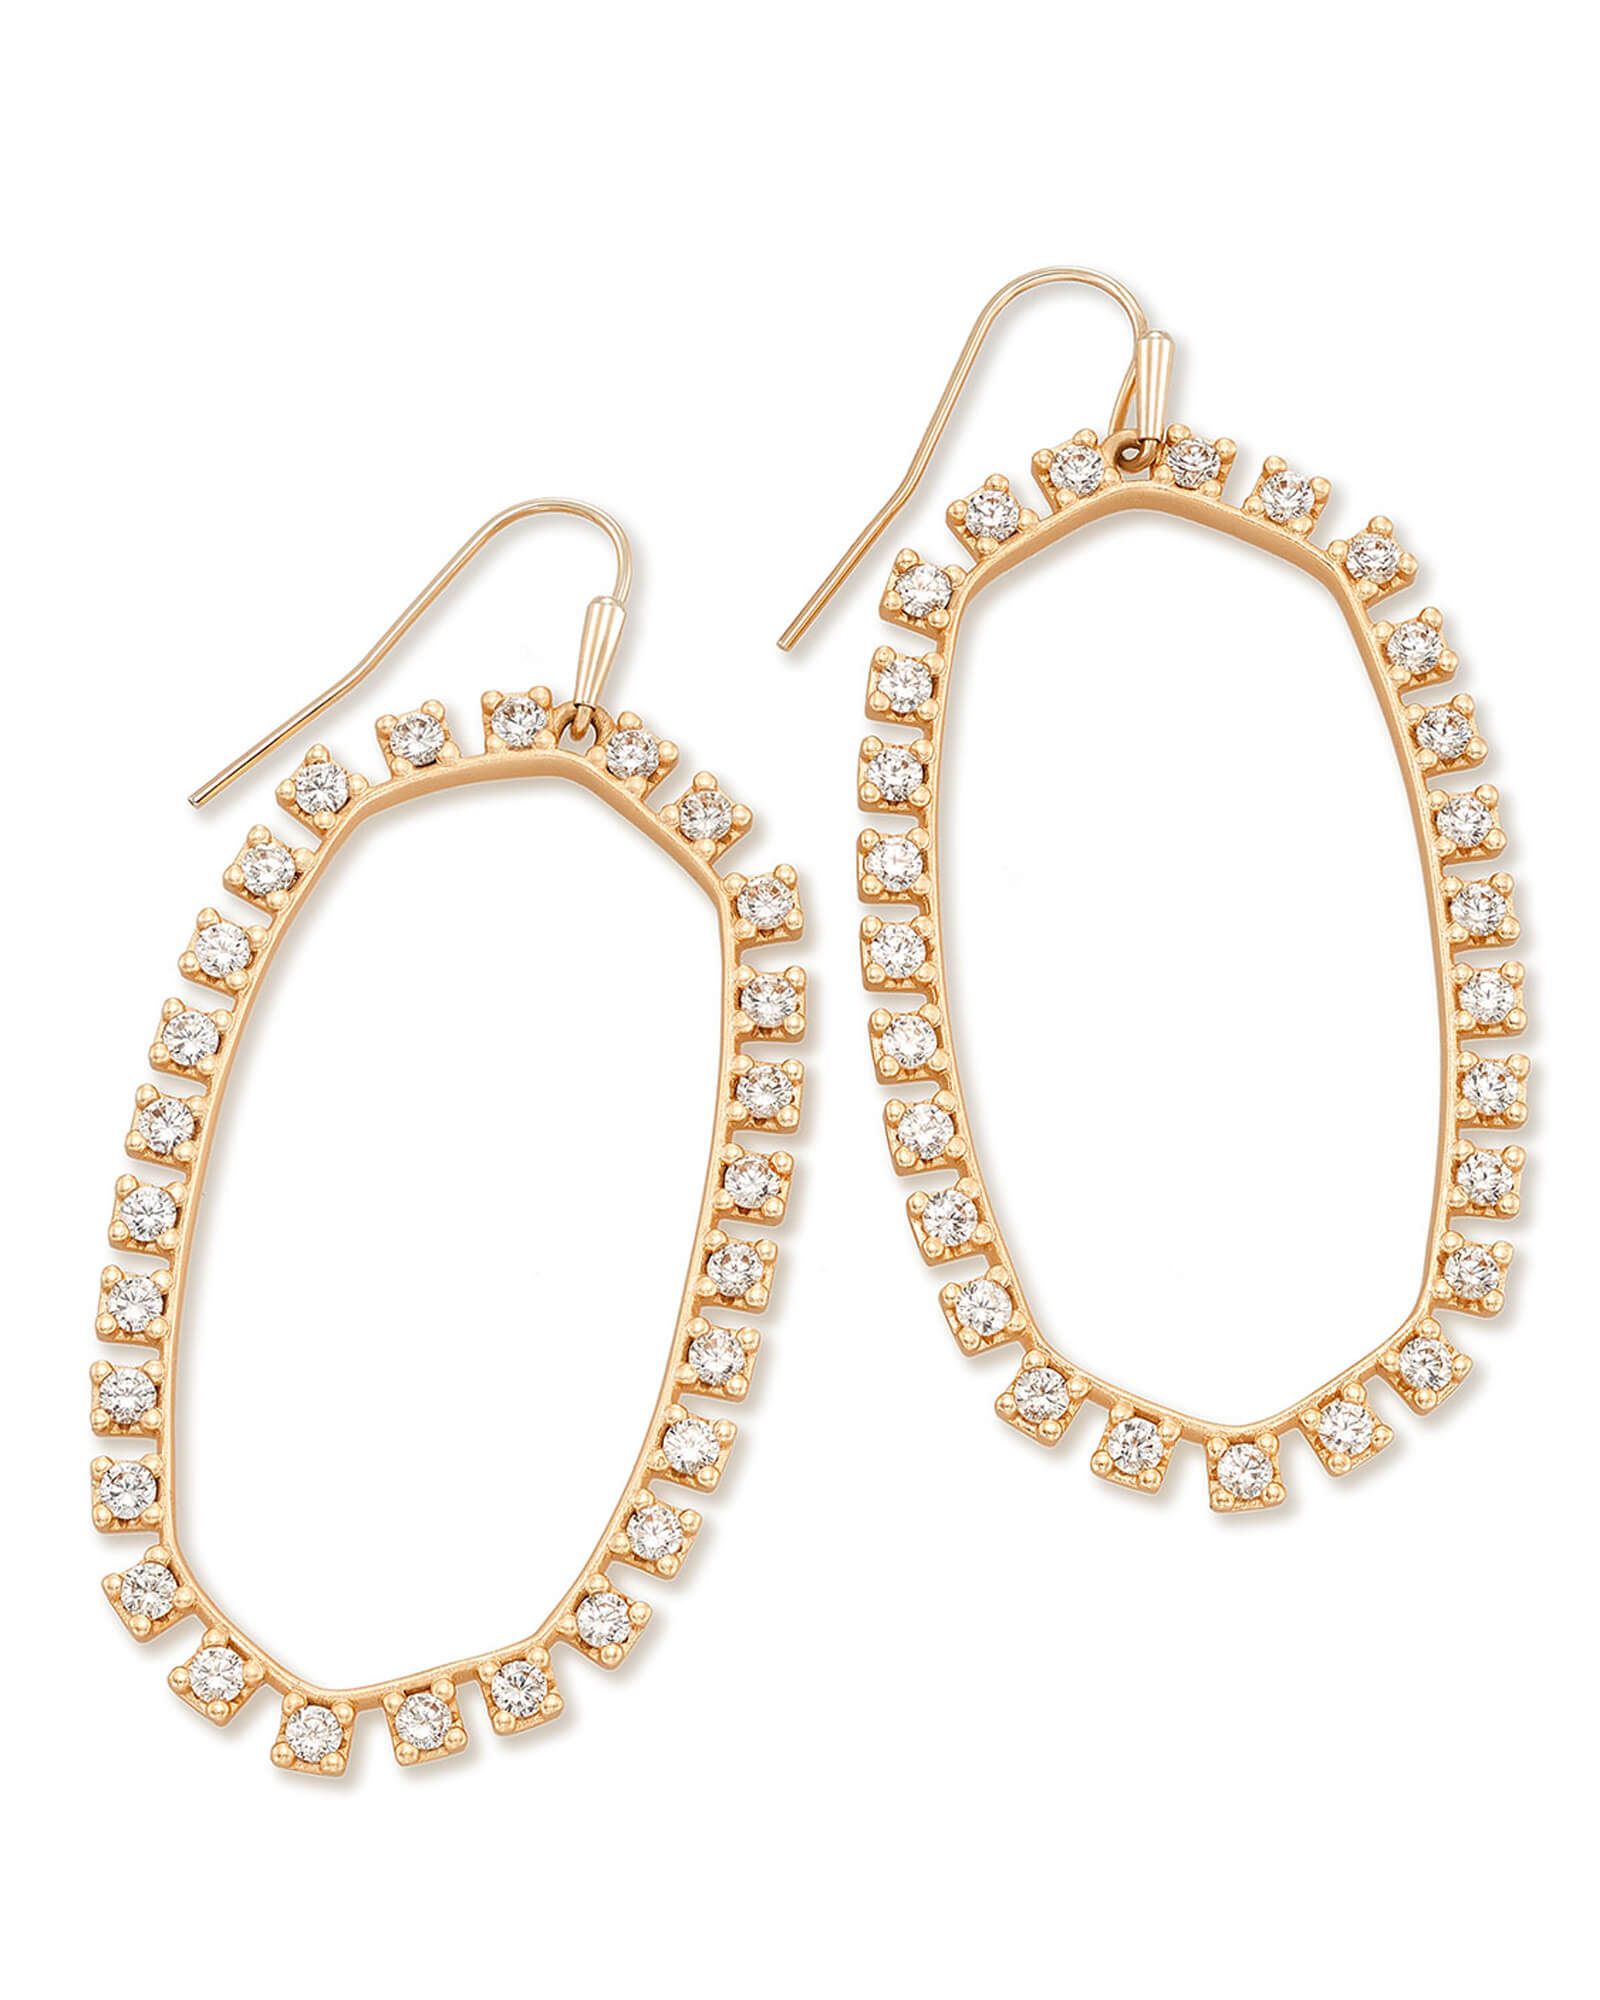 Danielle Open Frame Crystal Statement Earrings in Rose Gold | Kendra Scott